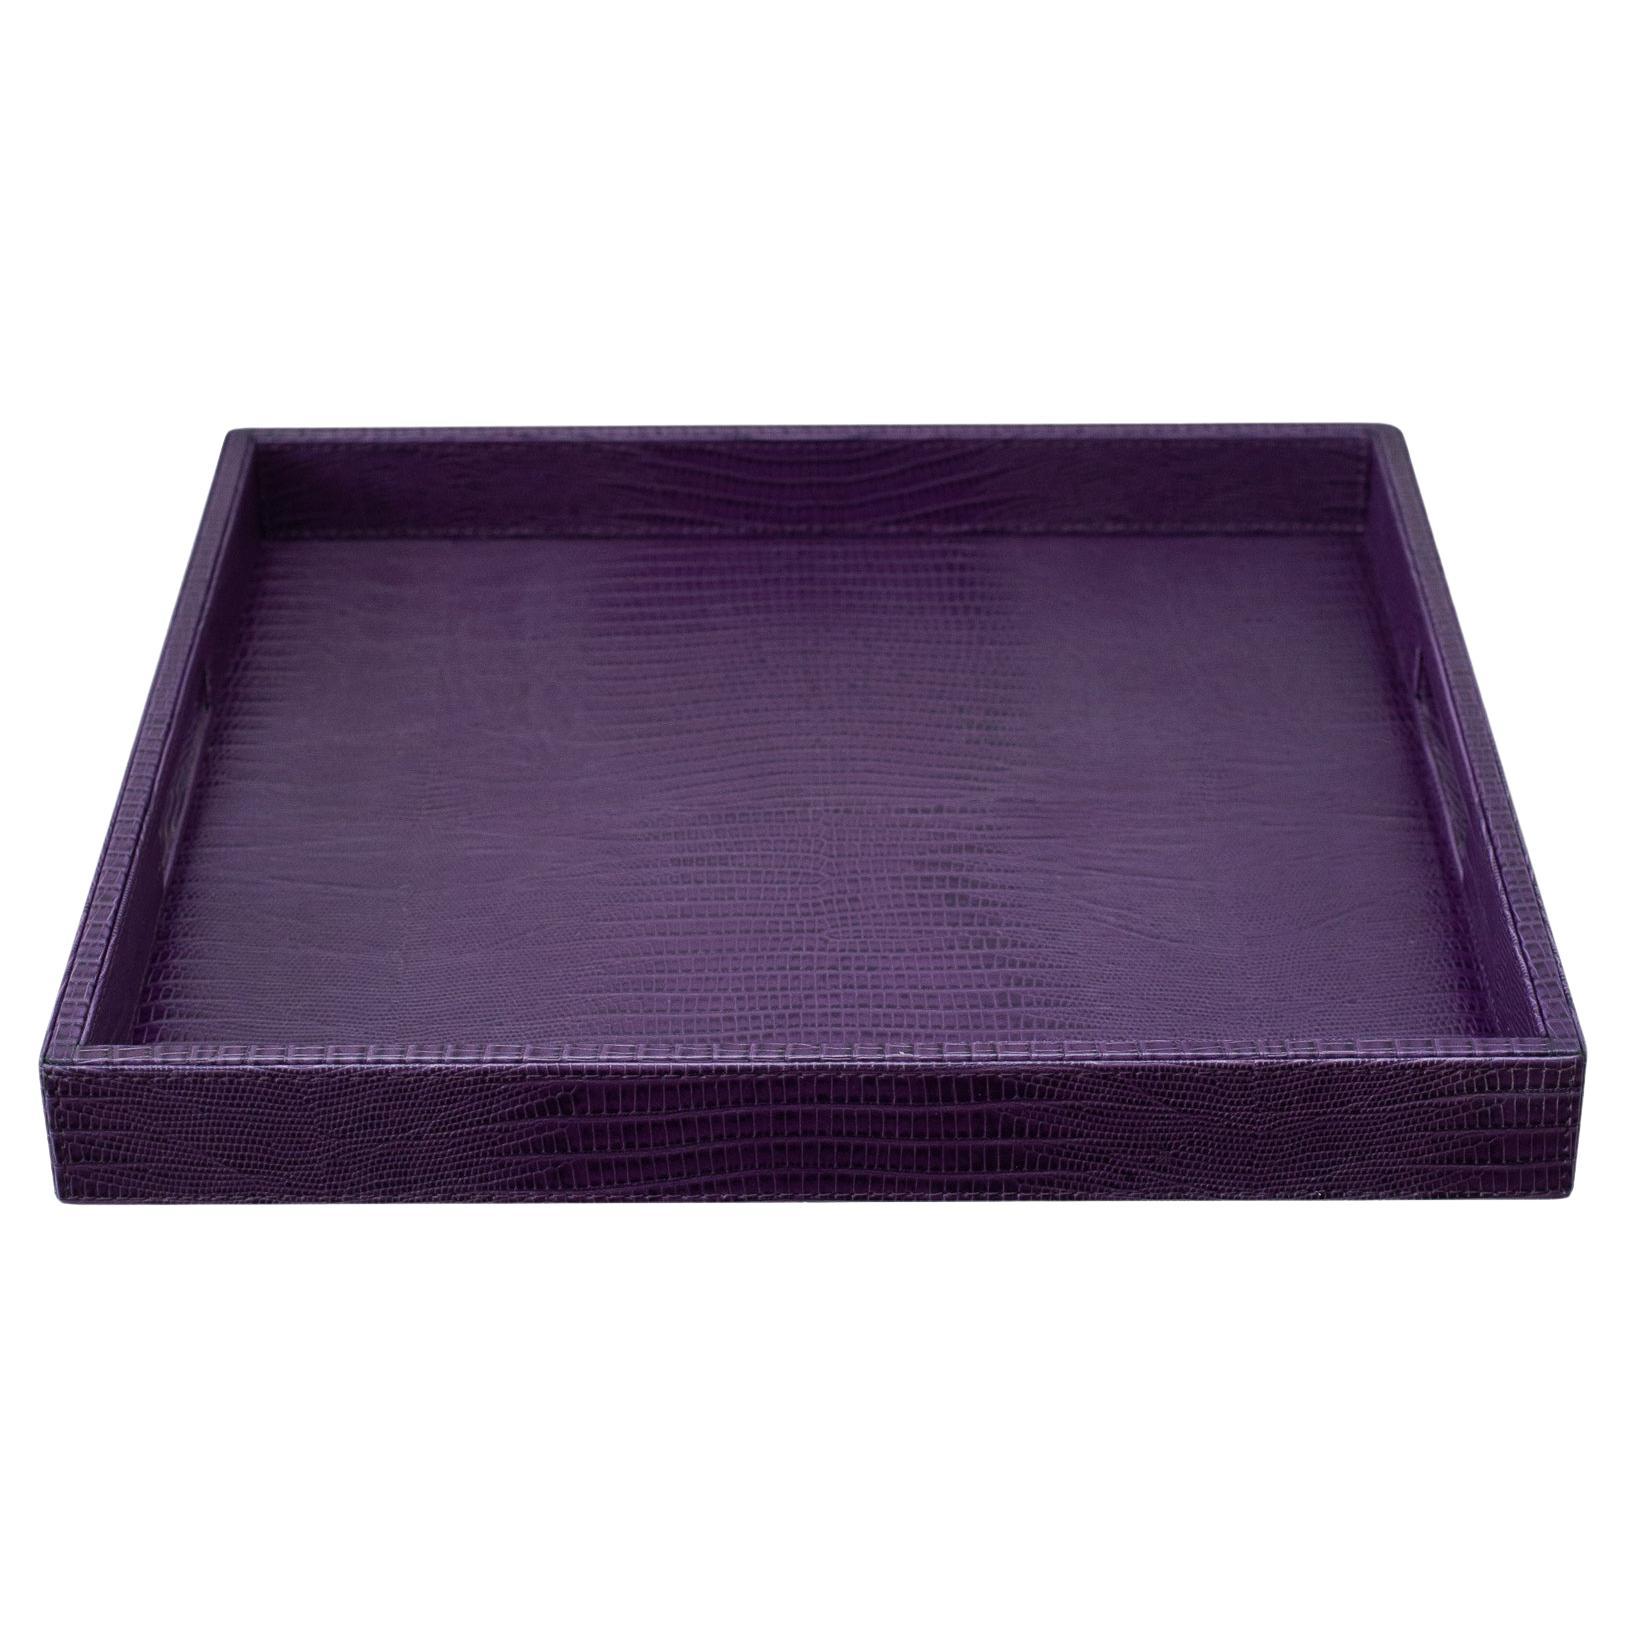 Grand plateau carré contemporain en cuir gaufré lézard violet 